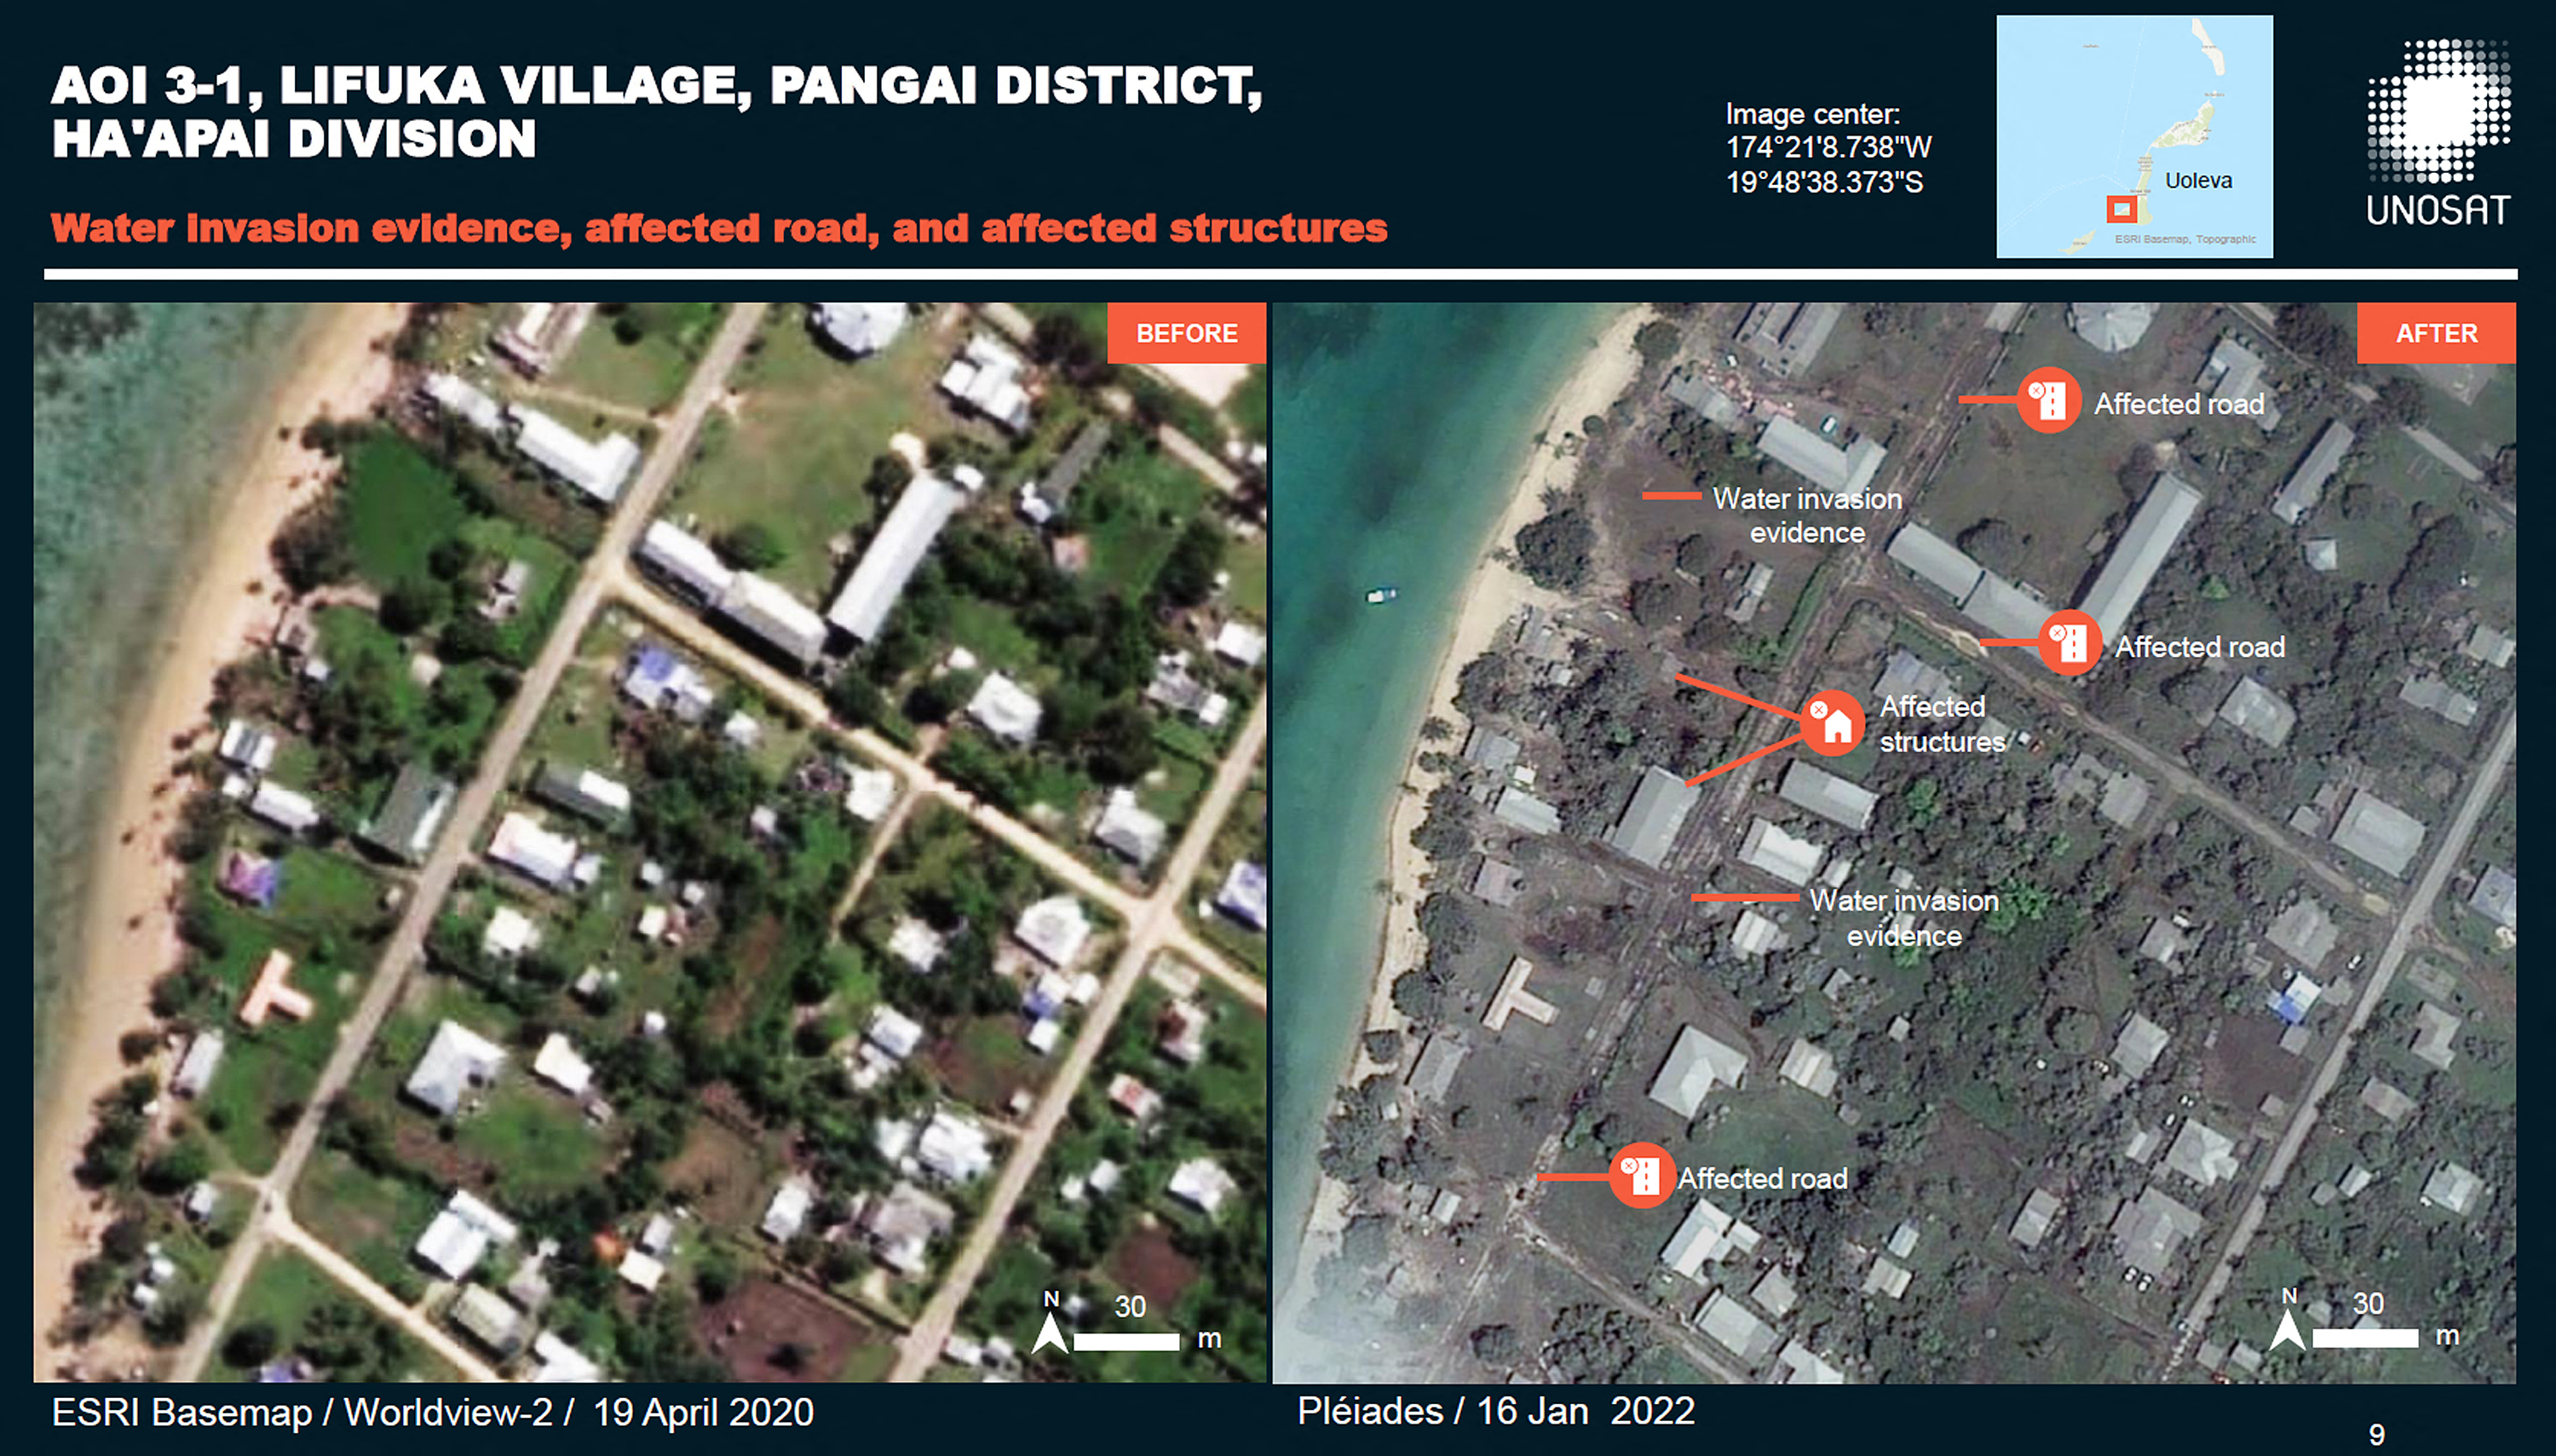 Los daños en la aldea de Lifuka, en el distrito de Pangai. Allí hay evidencia de inundaciones y daños a las rutas y edificios, y evidencia de lugares que han sido arrasados por el paso del agua (marcas rojas) (AFP/ UNITAR / CNES/AIRBUS DS / ESRI BASEMAP)